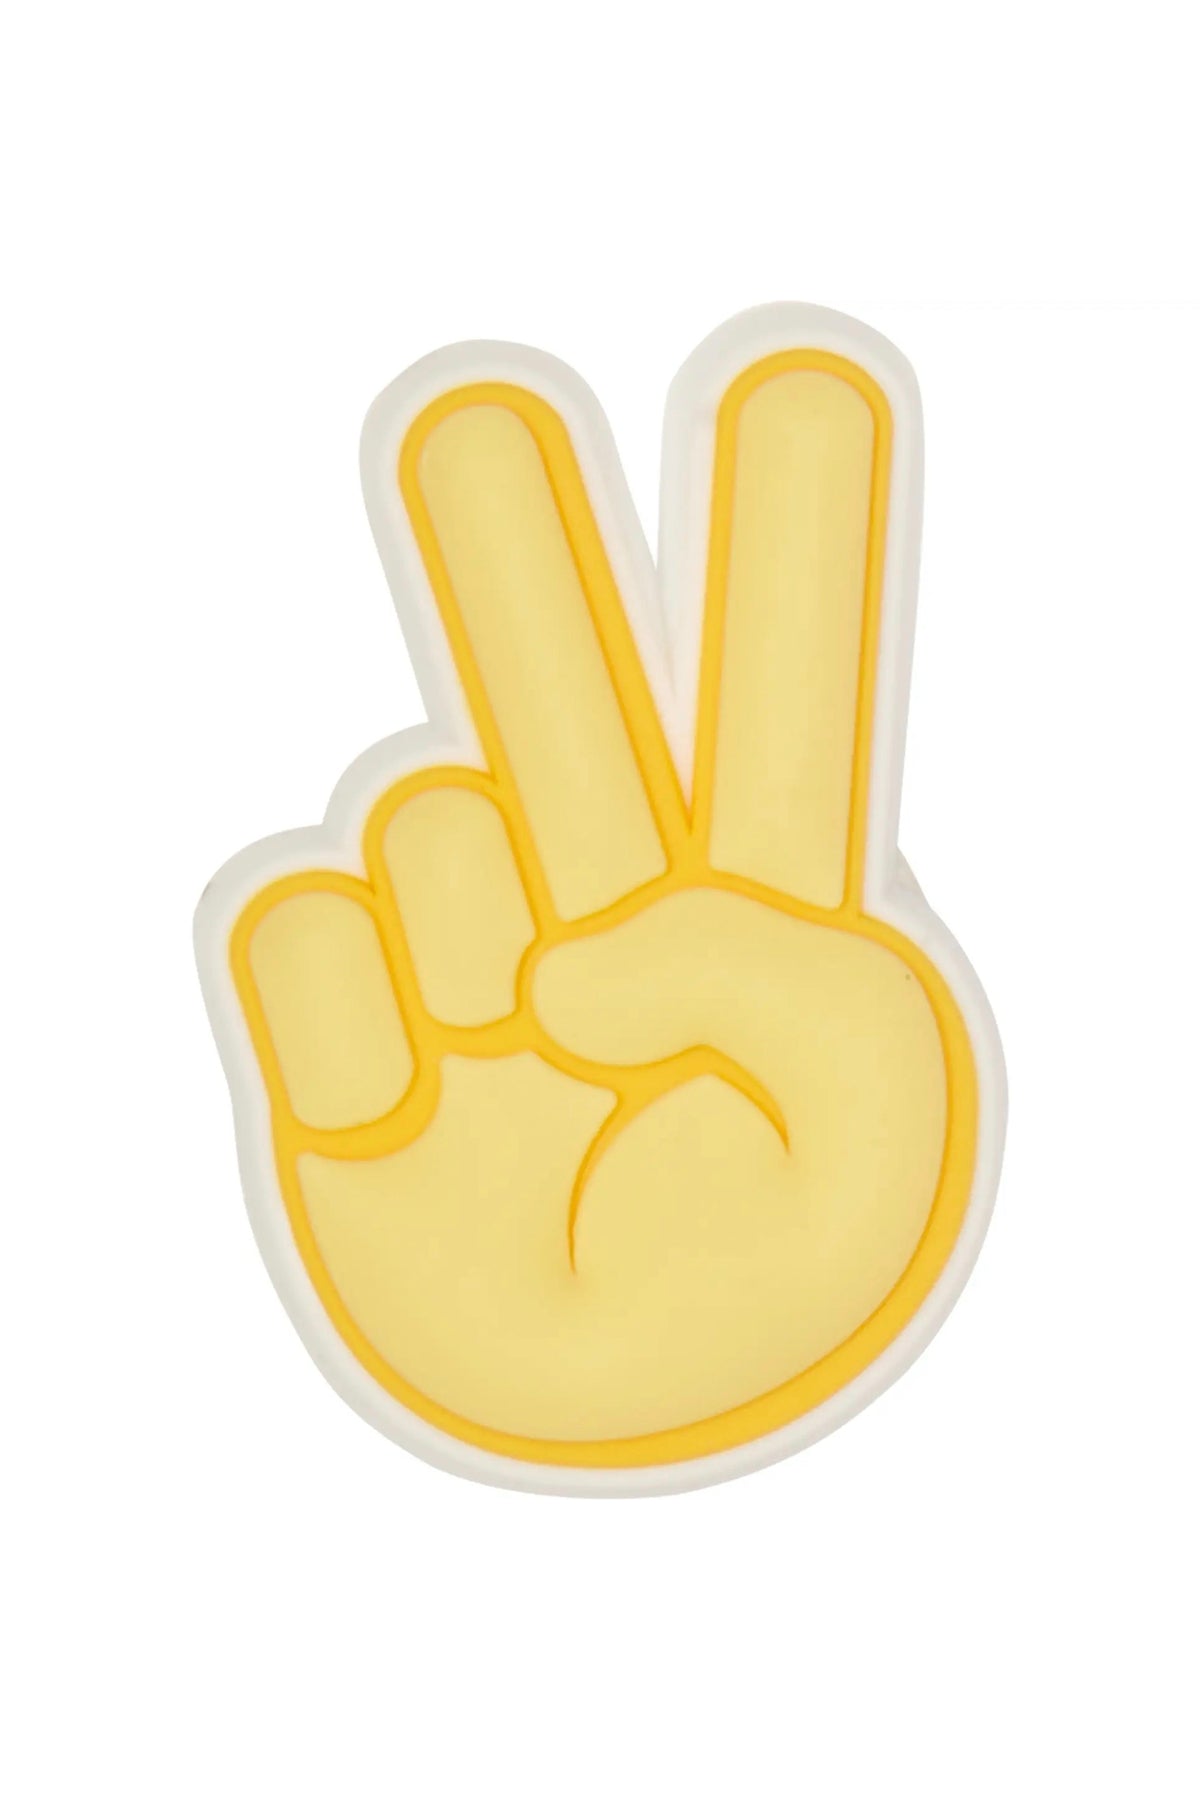 Jibbitz Peace Hand Sign